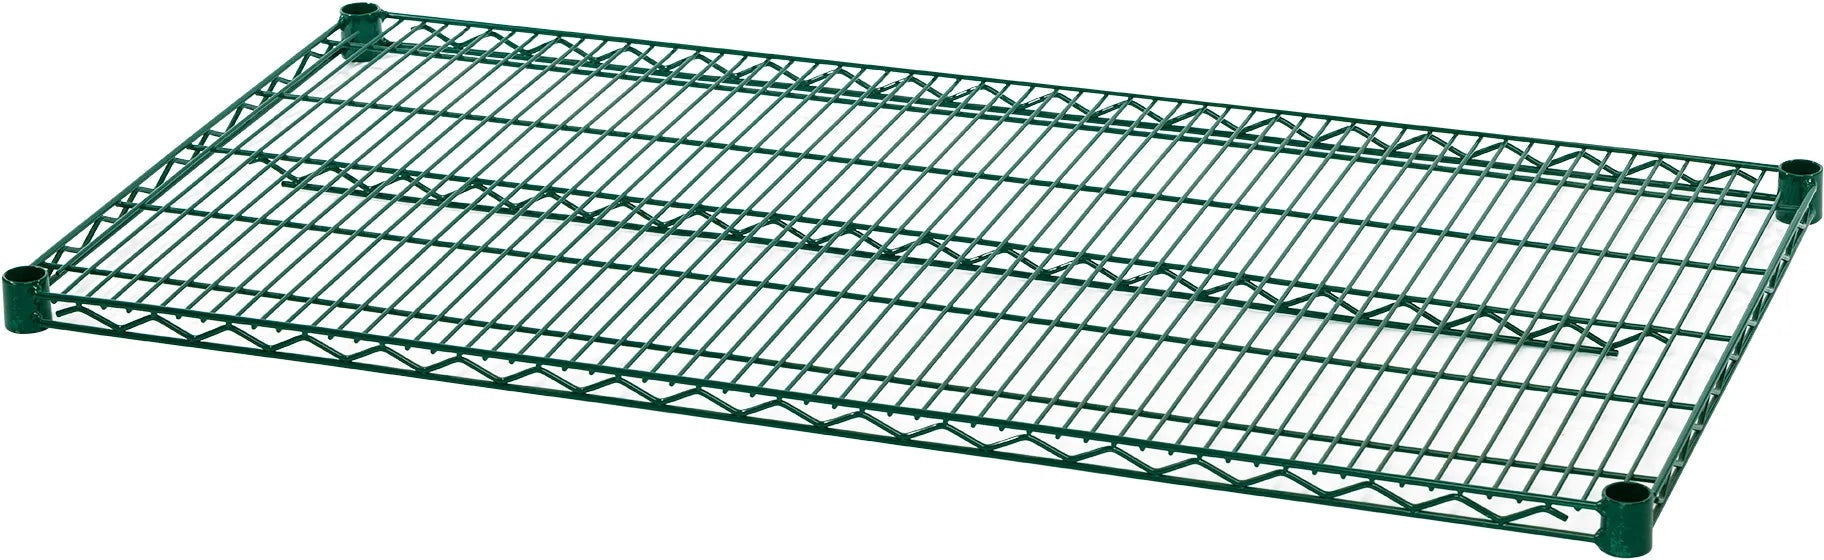 Julien - Rosko 48" x 24" Shelf For Wire Shelving, Green Epoxy - RO-WS-S4824-GE